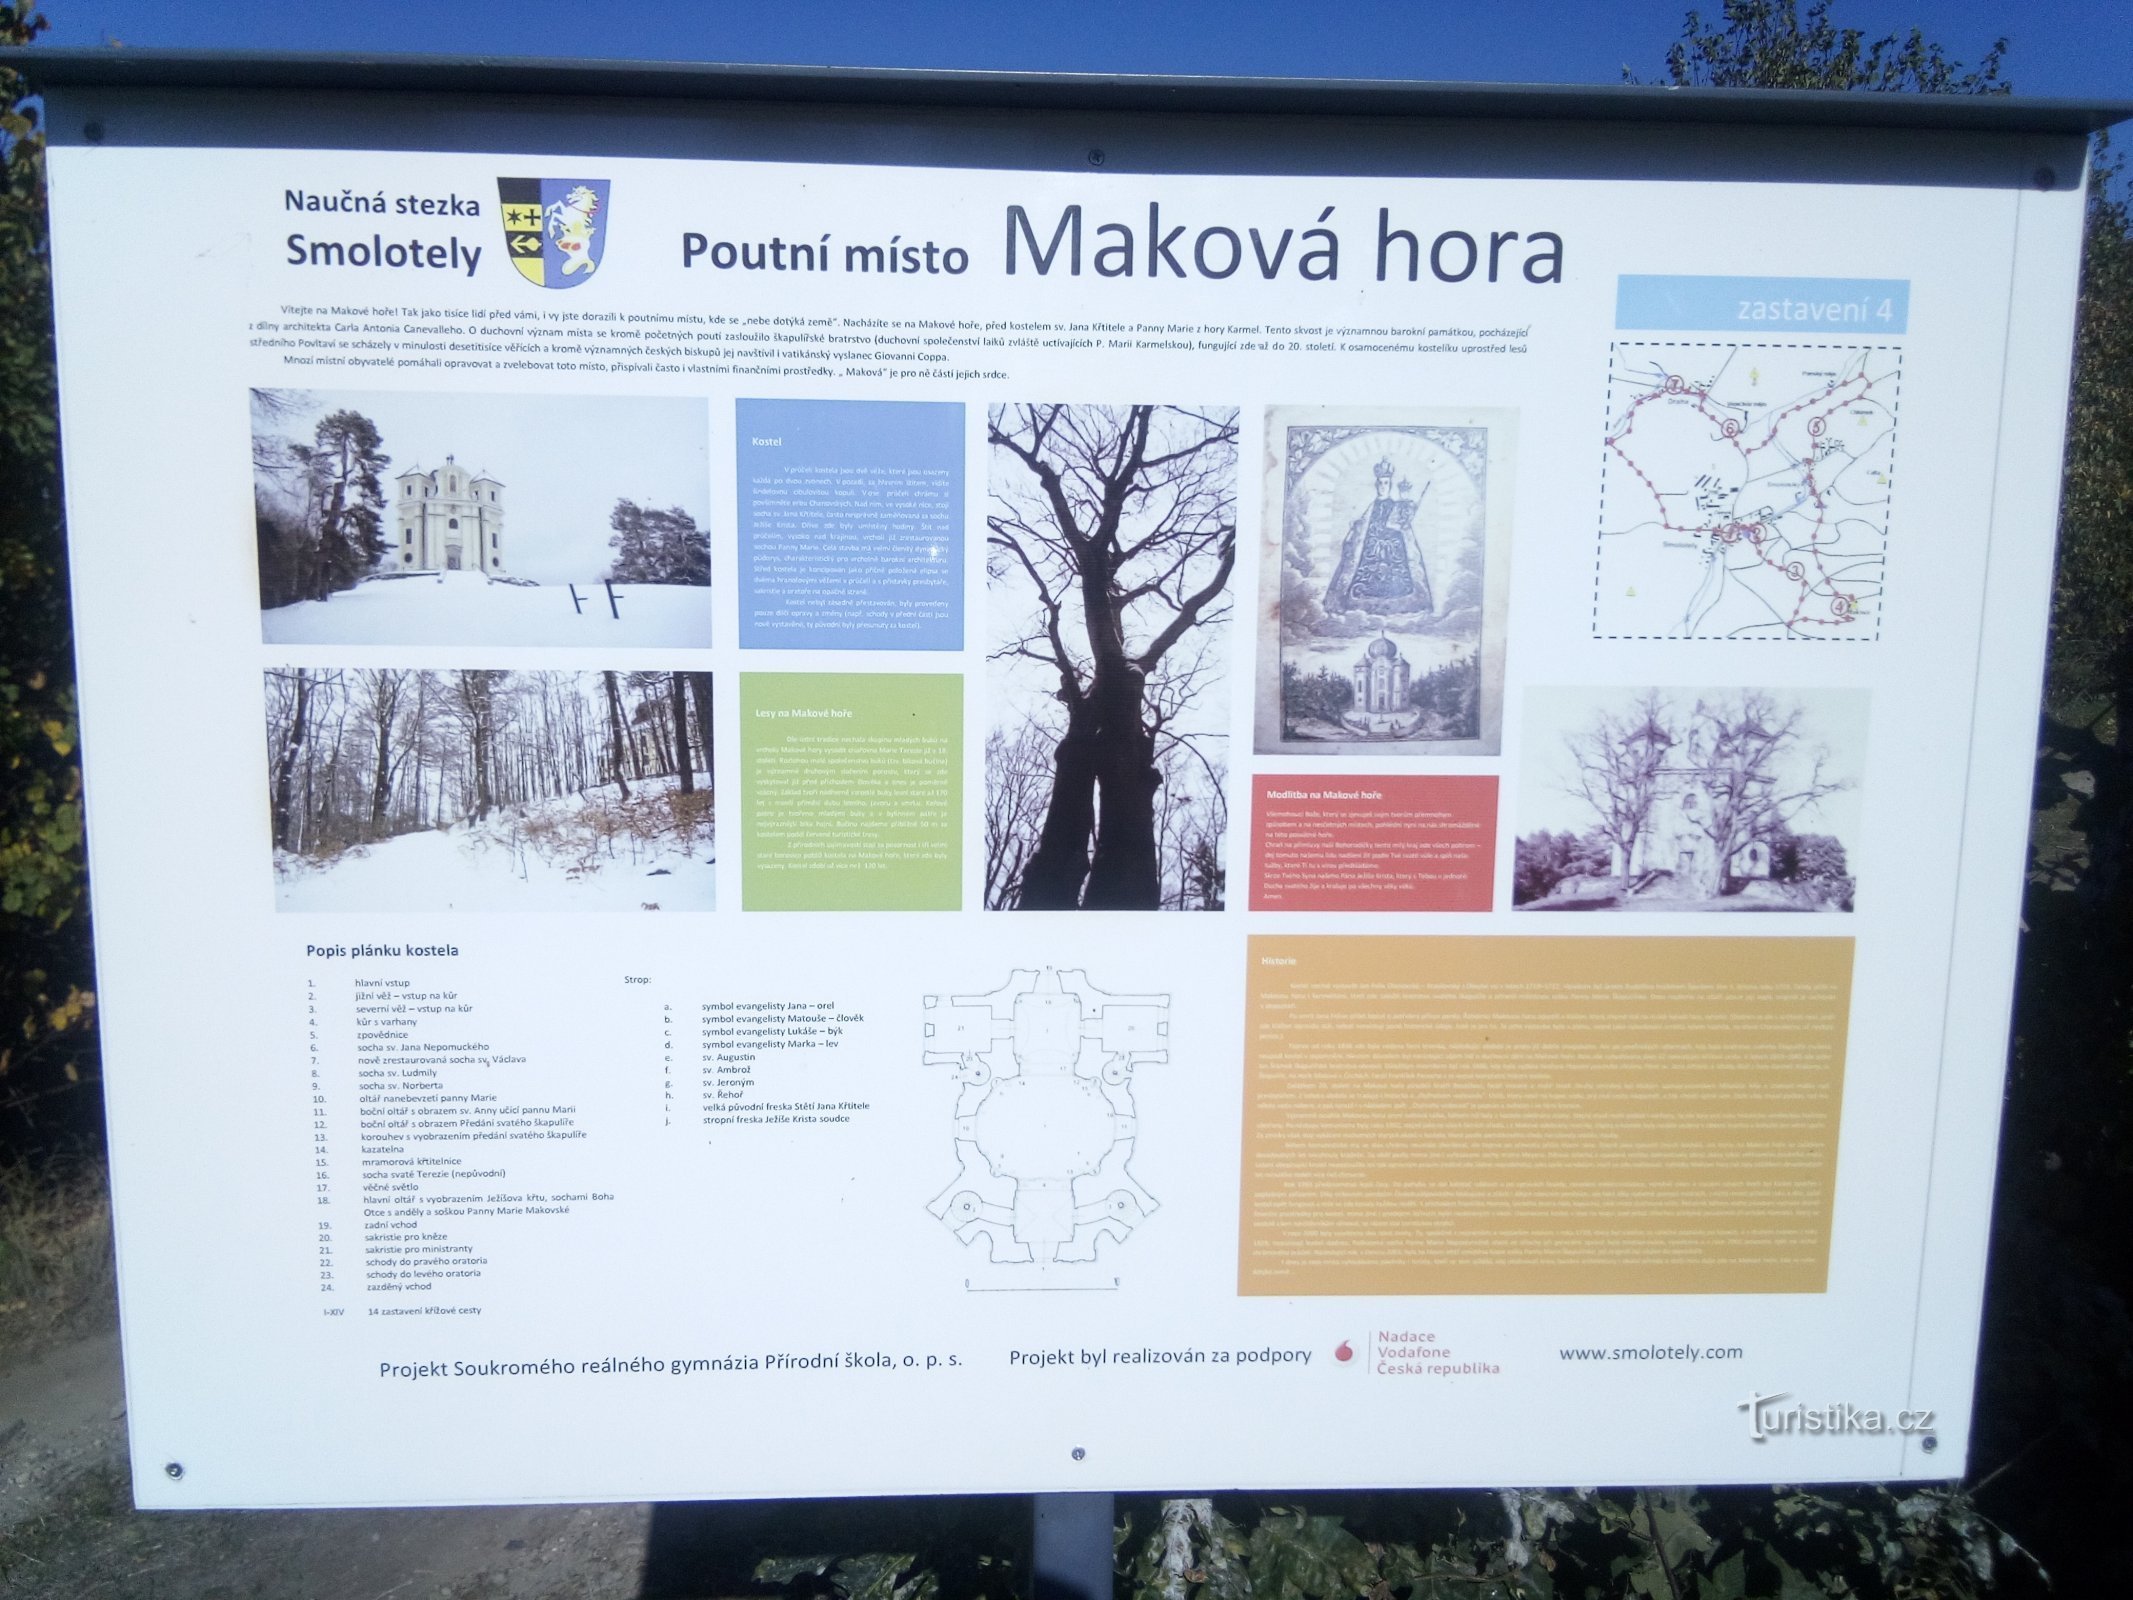 Intorno a Smolotel via Makova hora e il belvedere di Milada